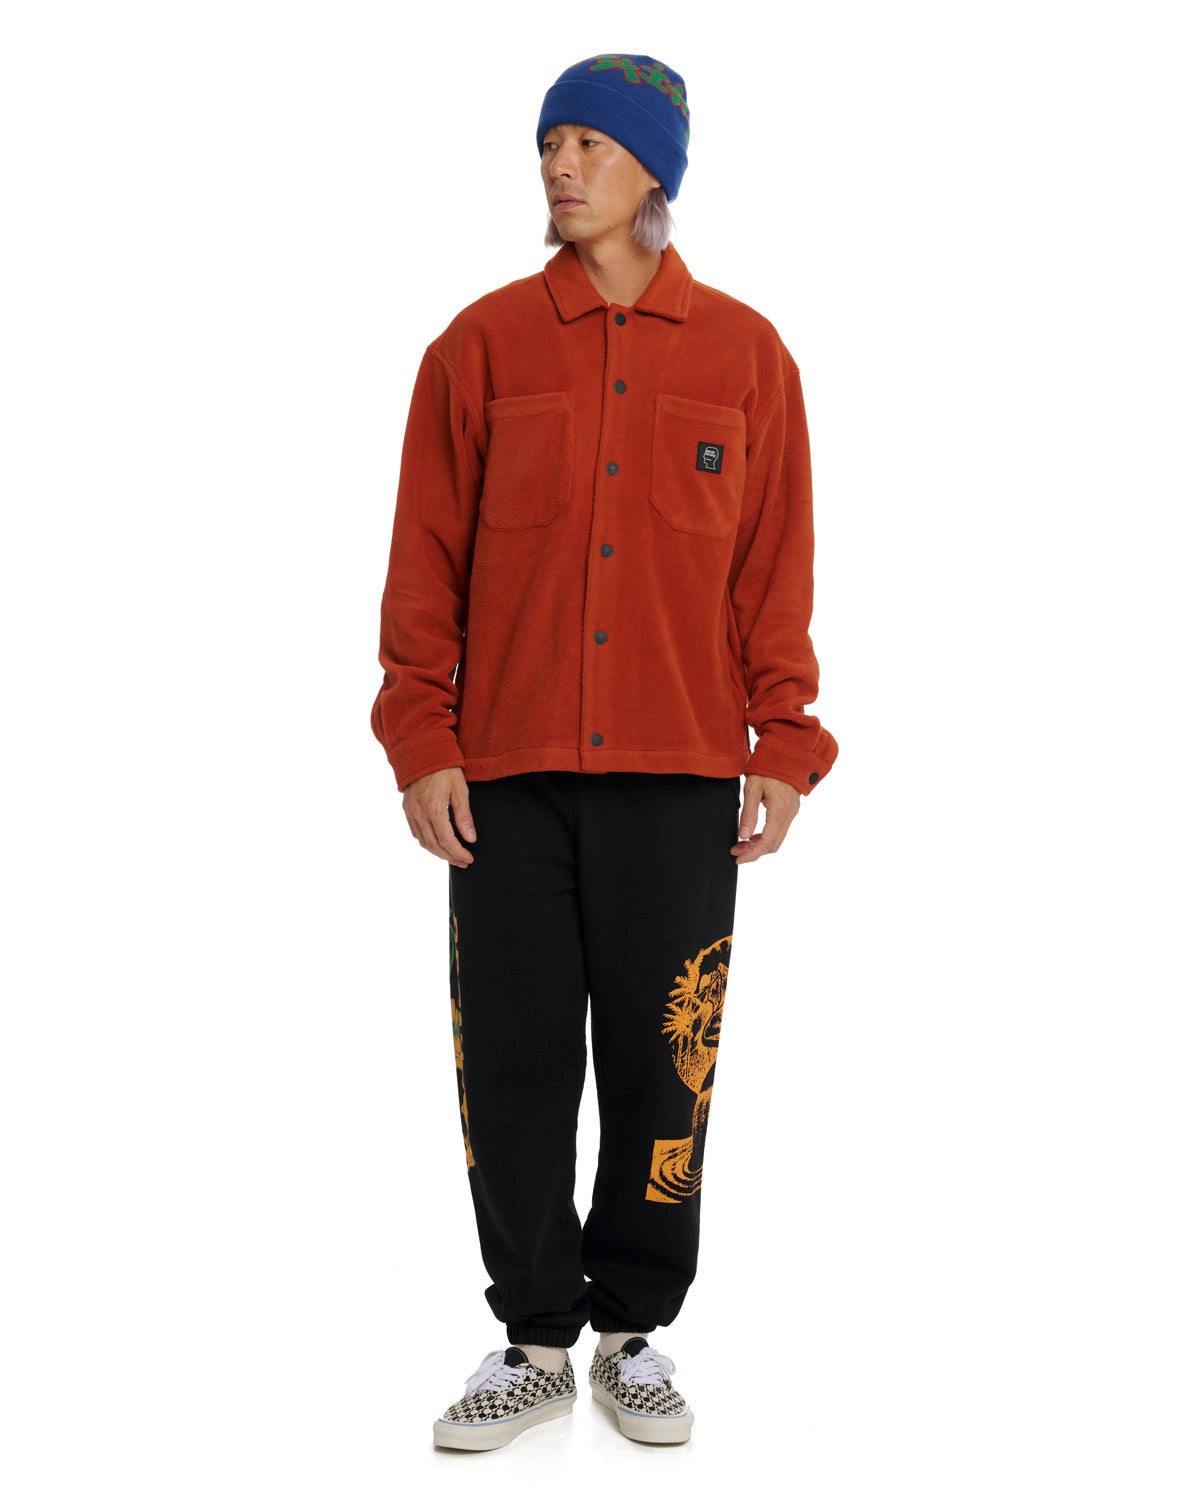 Polar Fleece Climber Shirt - Burnt Orange 4